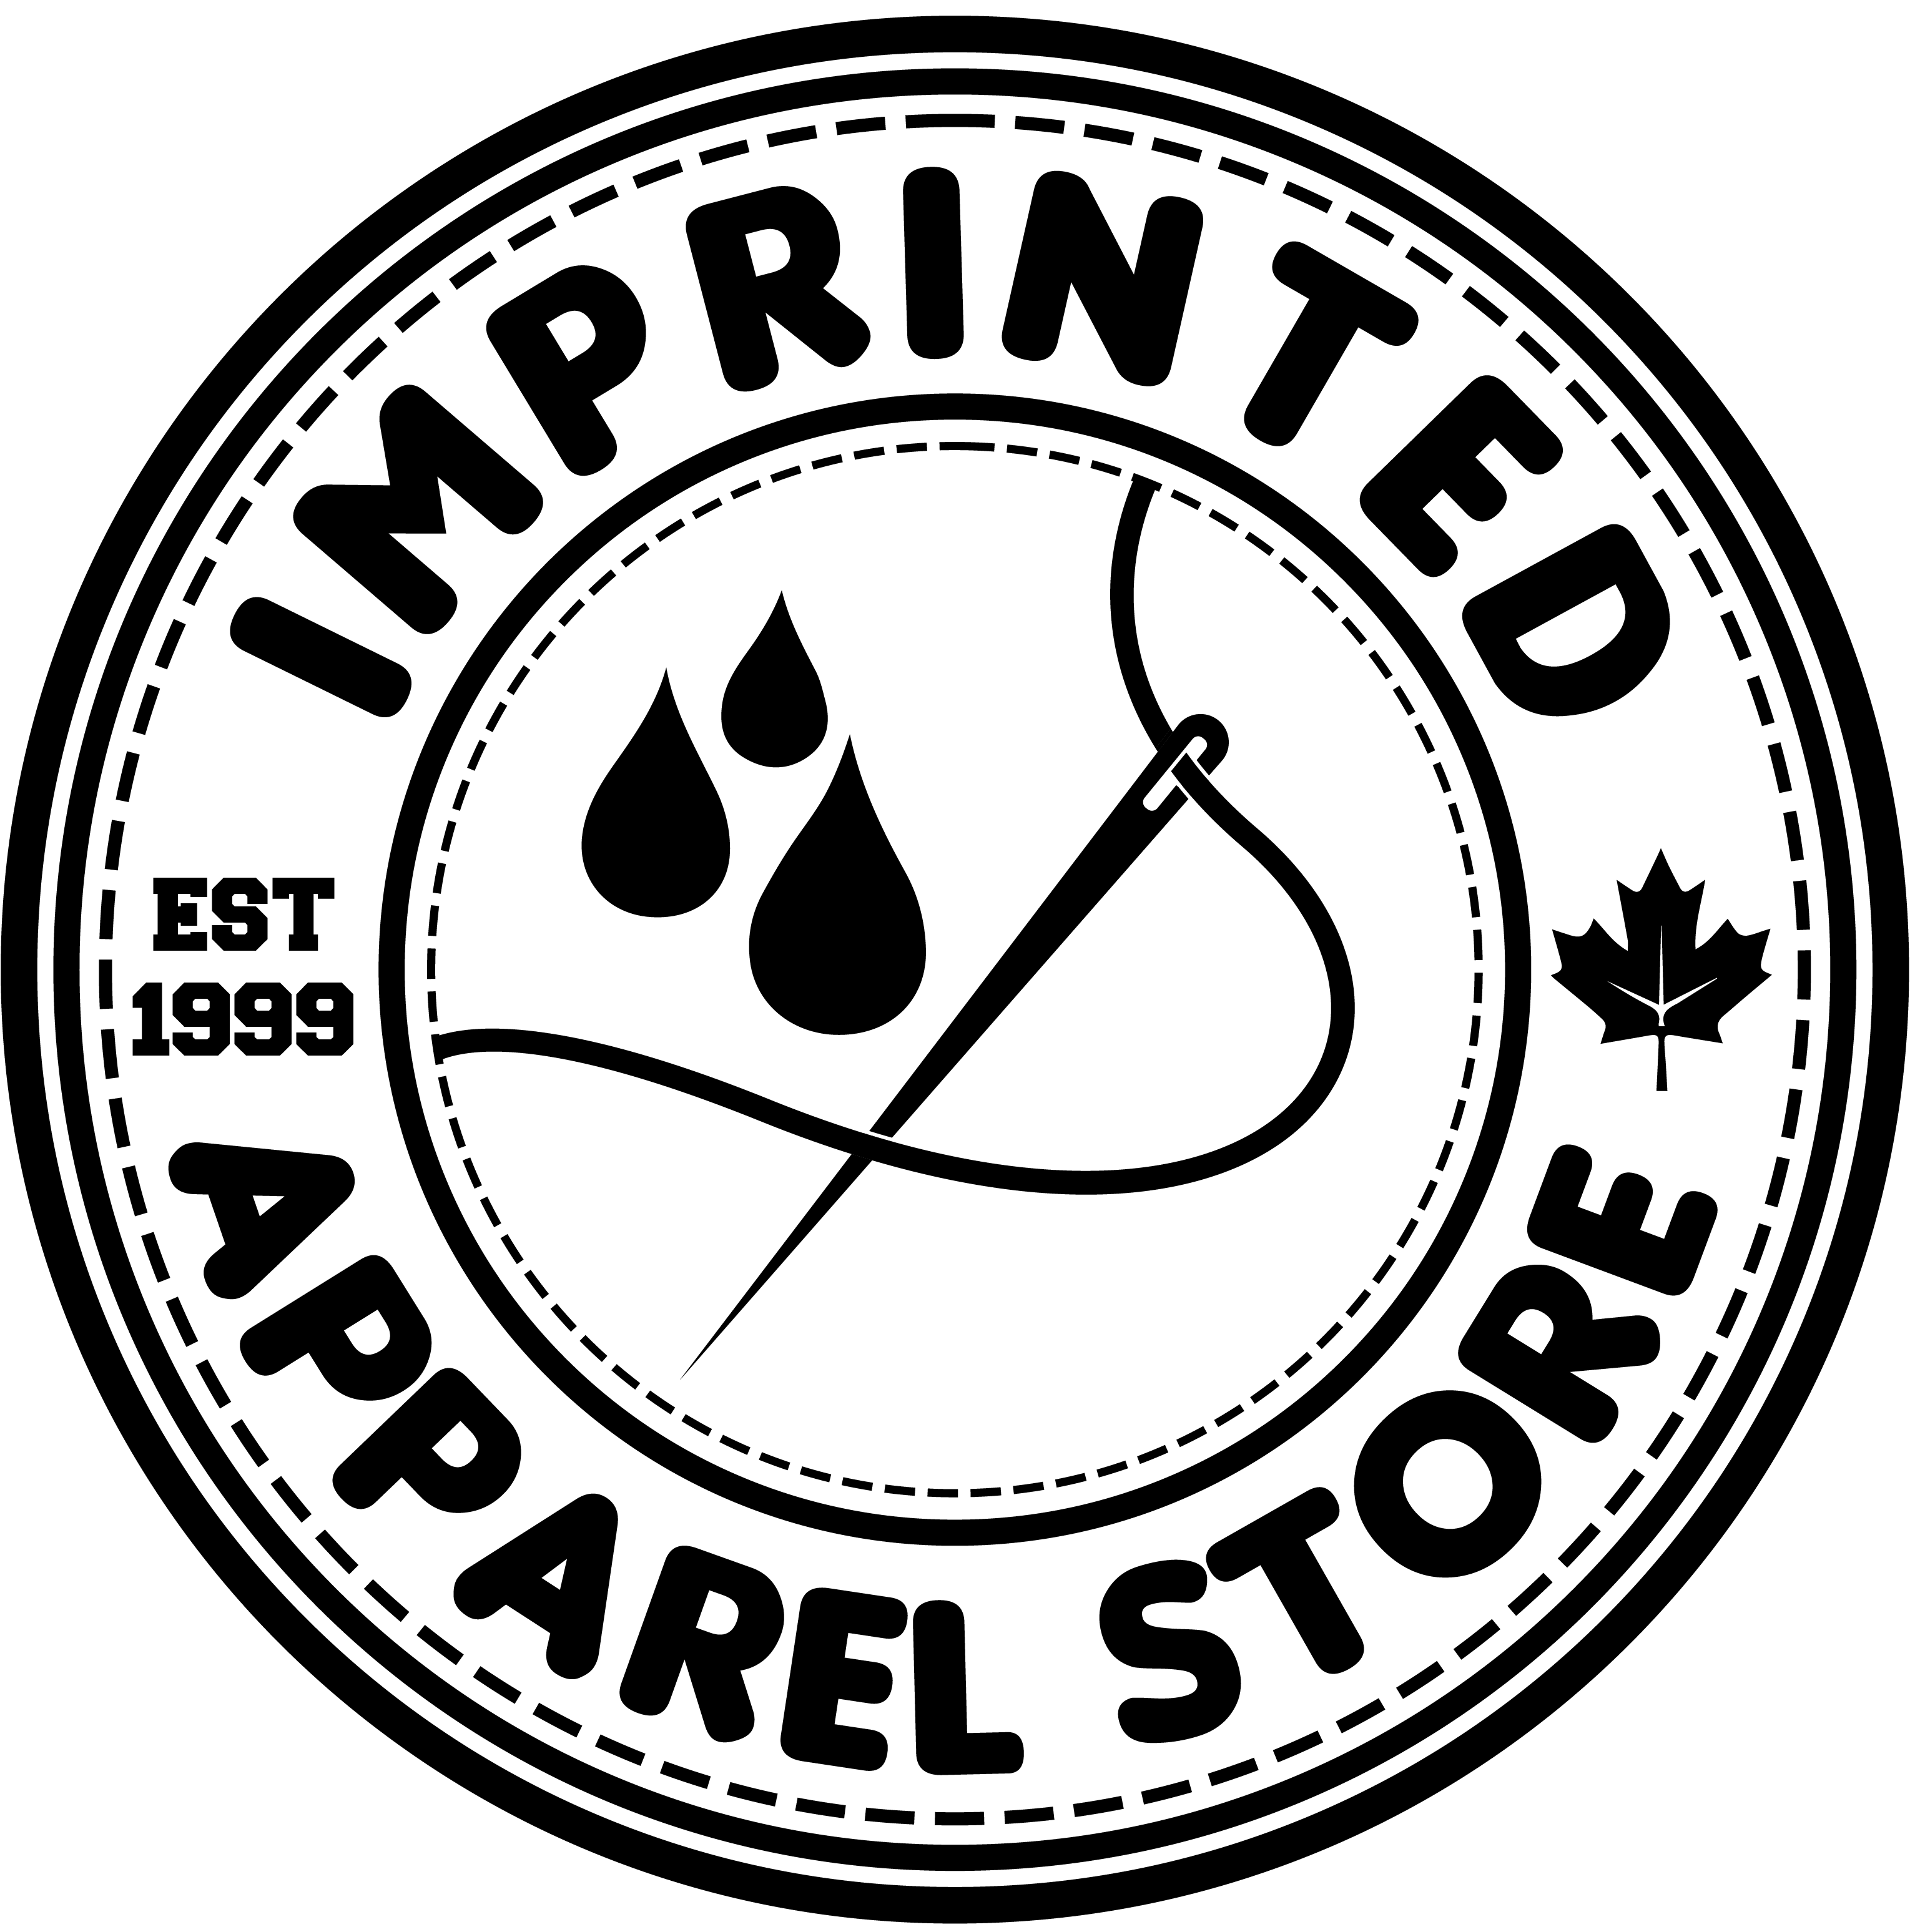 Imprinted Apparel Store